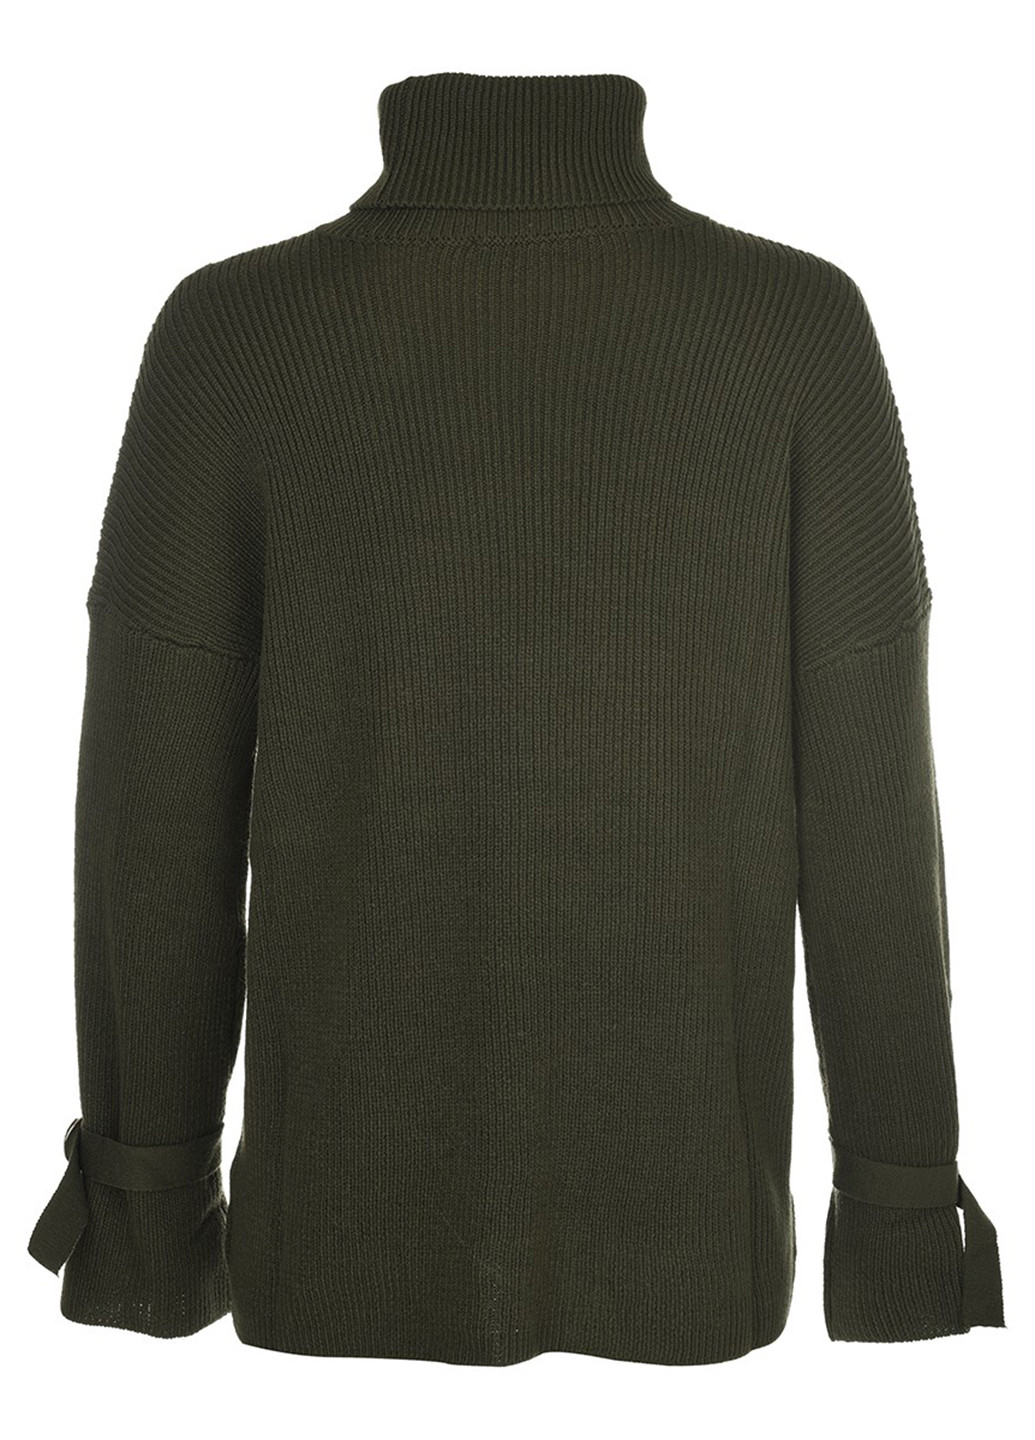 Оливковый (хаки) демисезонный свитер LOVE REPUBLIC